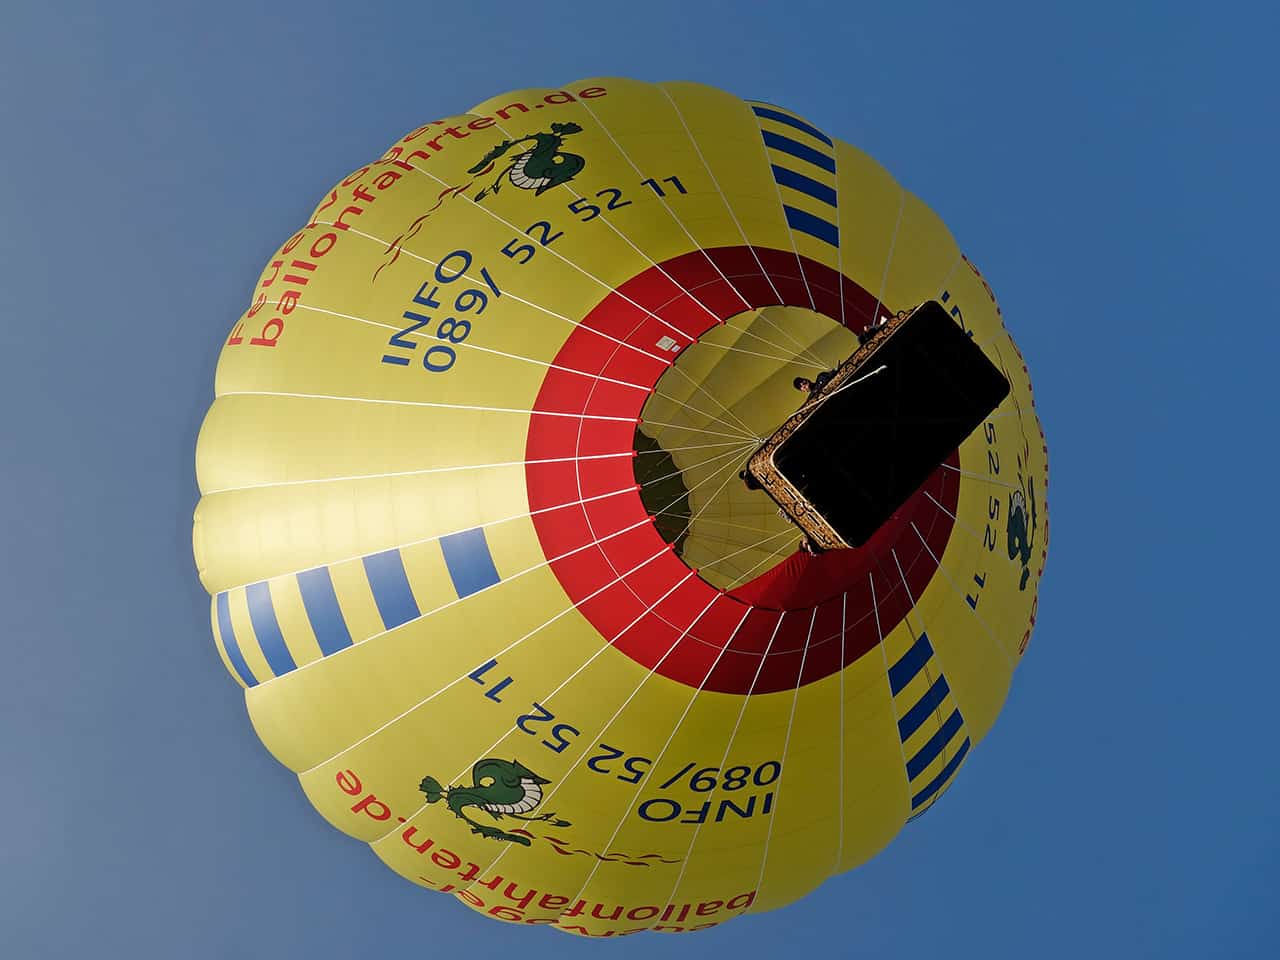 Feuervogel Hot Air Ballonteam Start mit dem neuen Ballon, August 2017